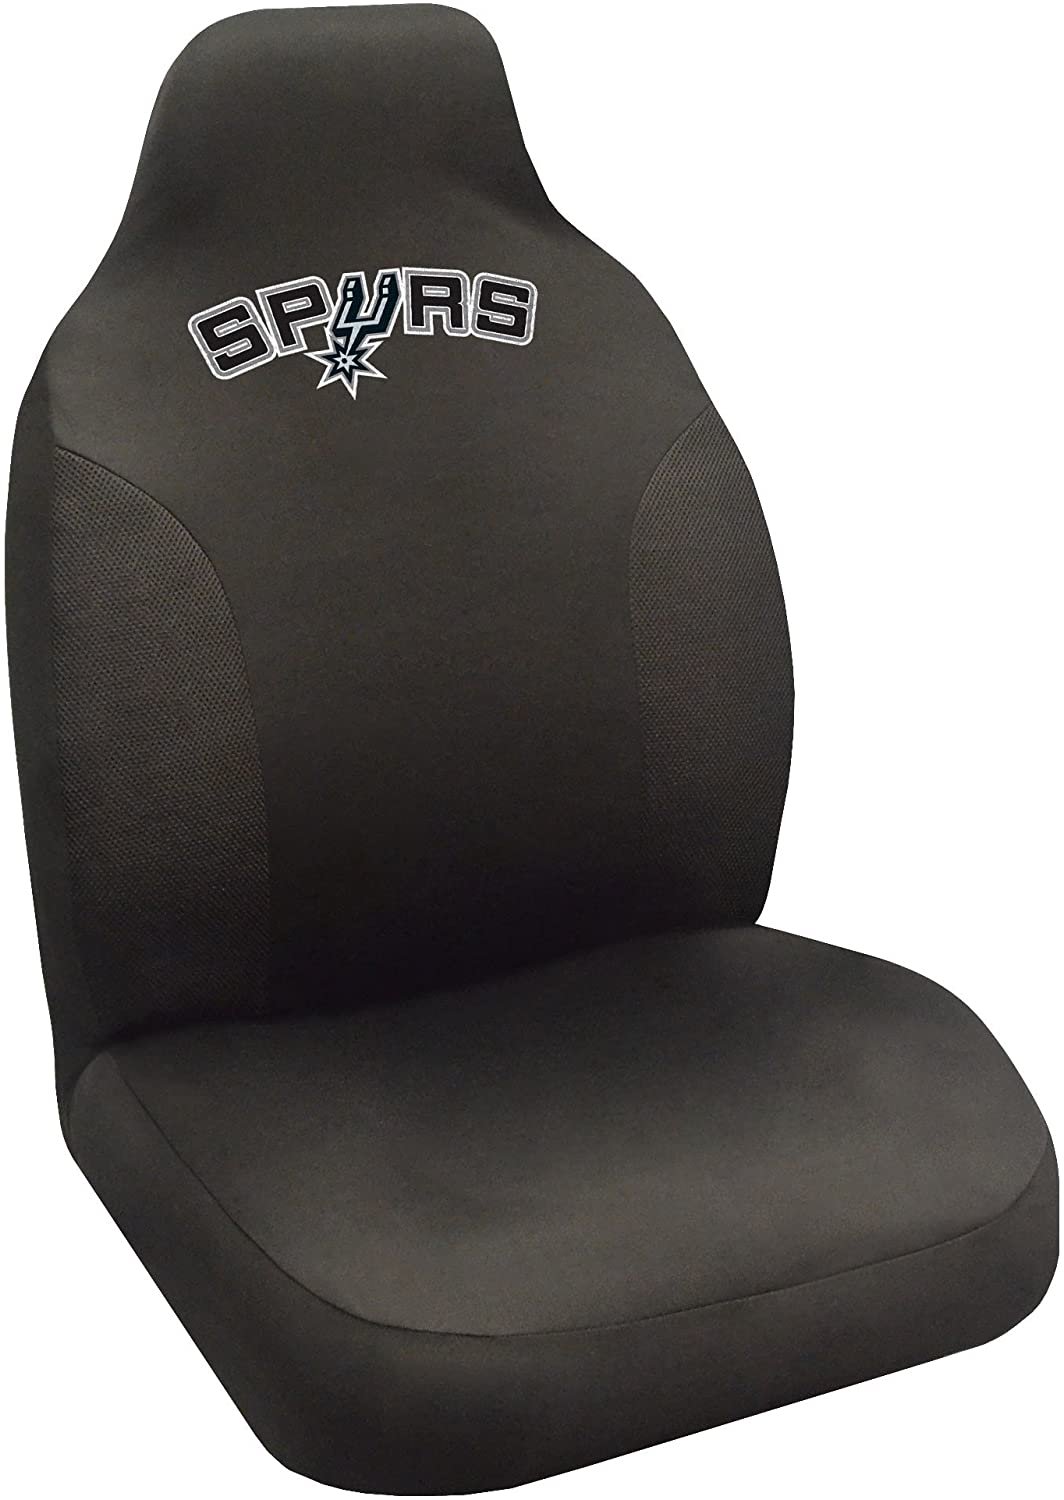 FANMATS - 15136 NBA San Antonio Spurs Polyester Seat Cover,20"x48"